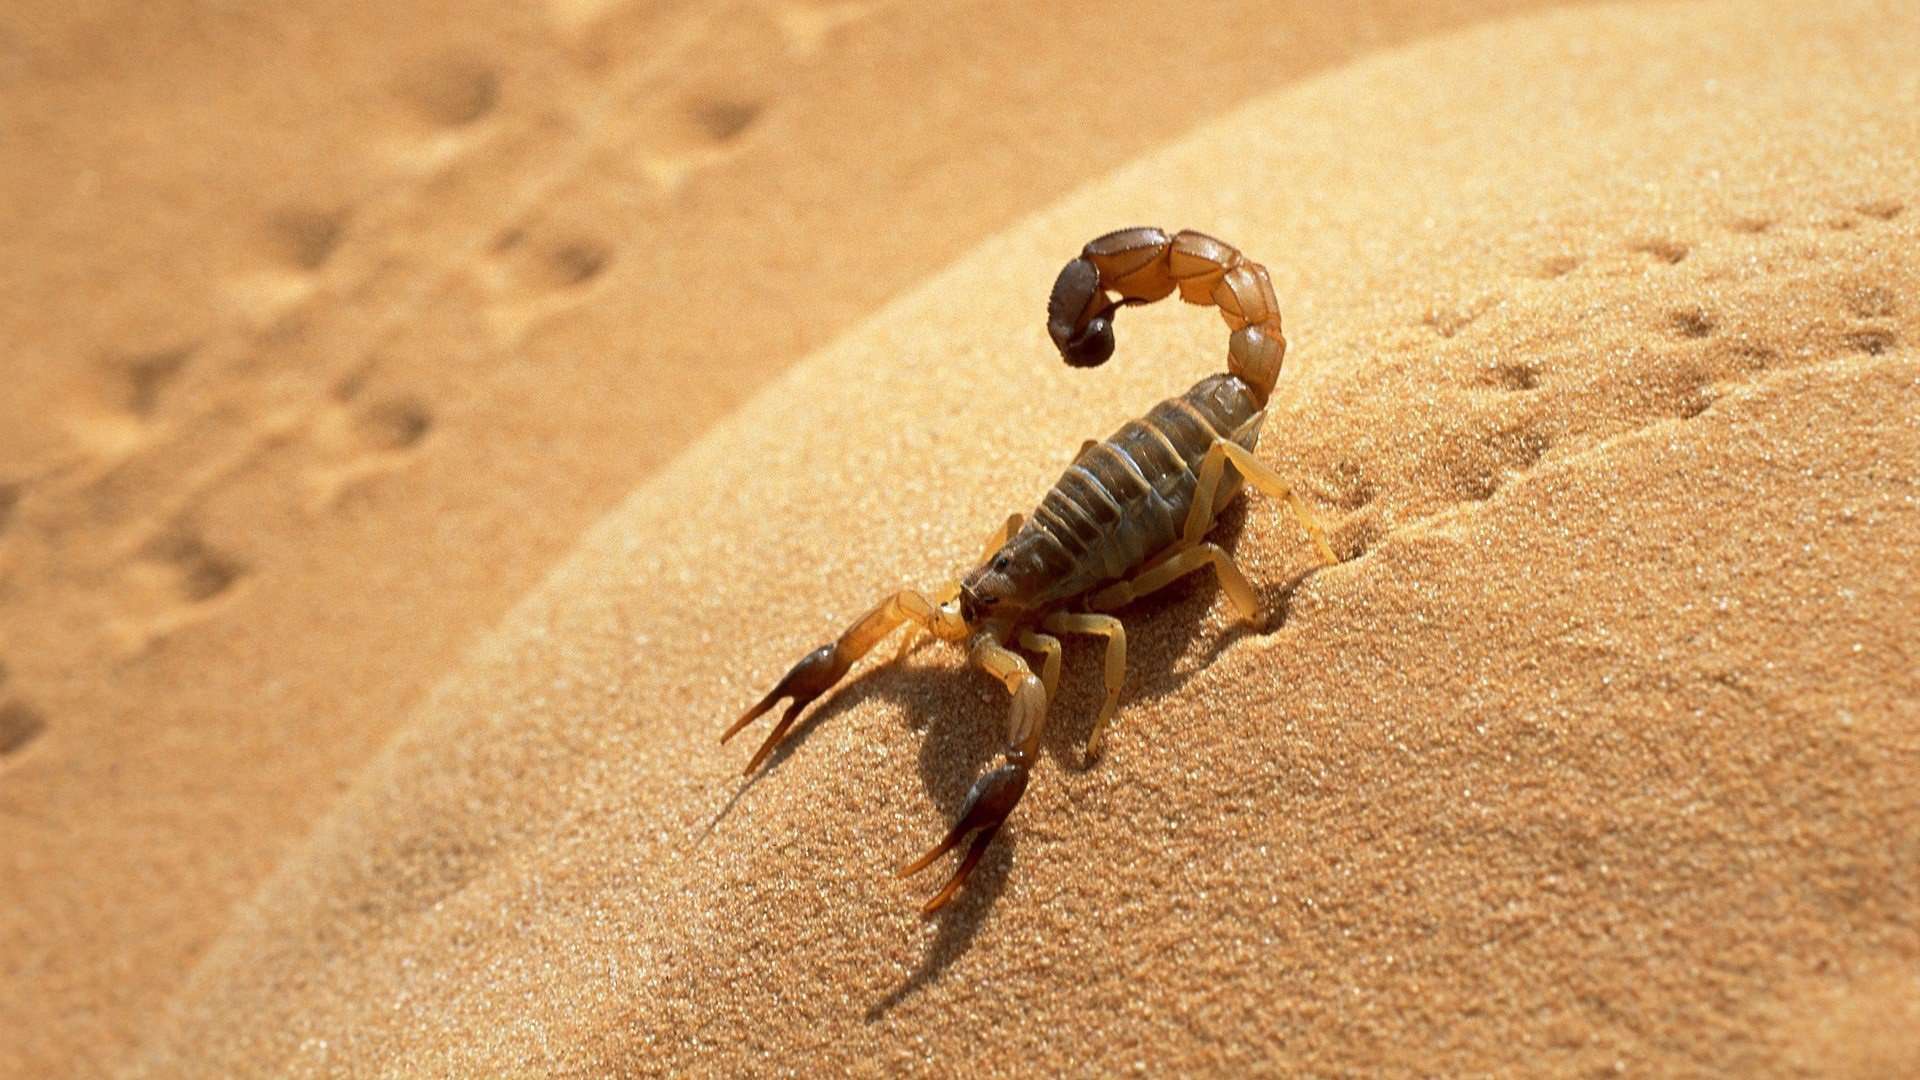 Att se en skorpion i en dröm och döda den